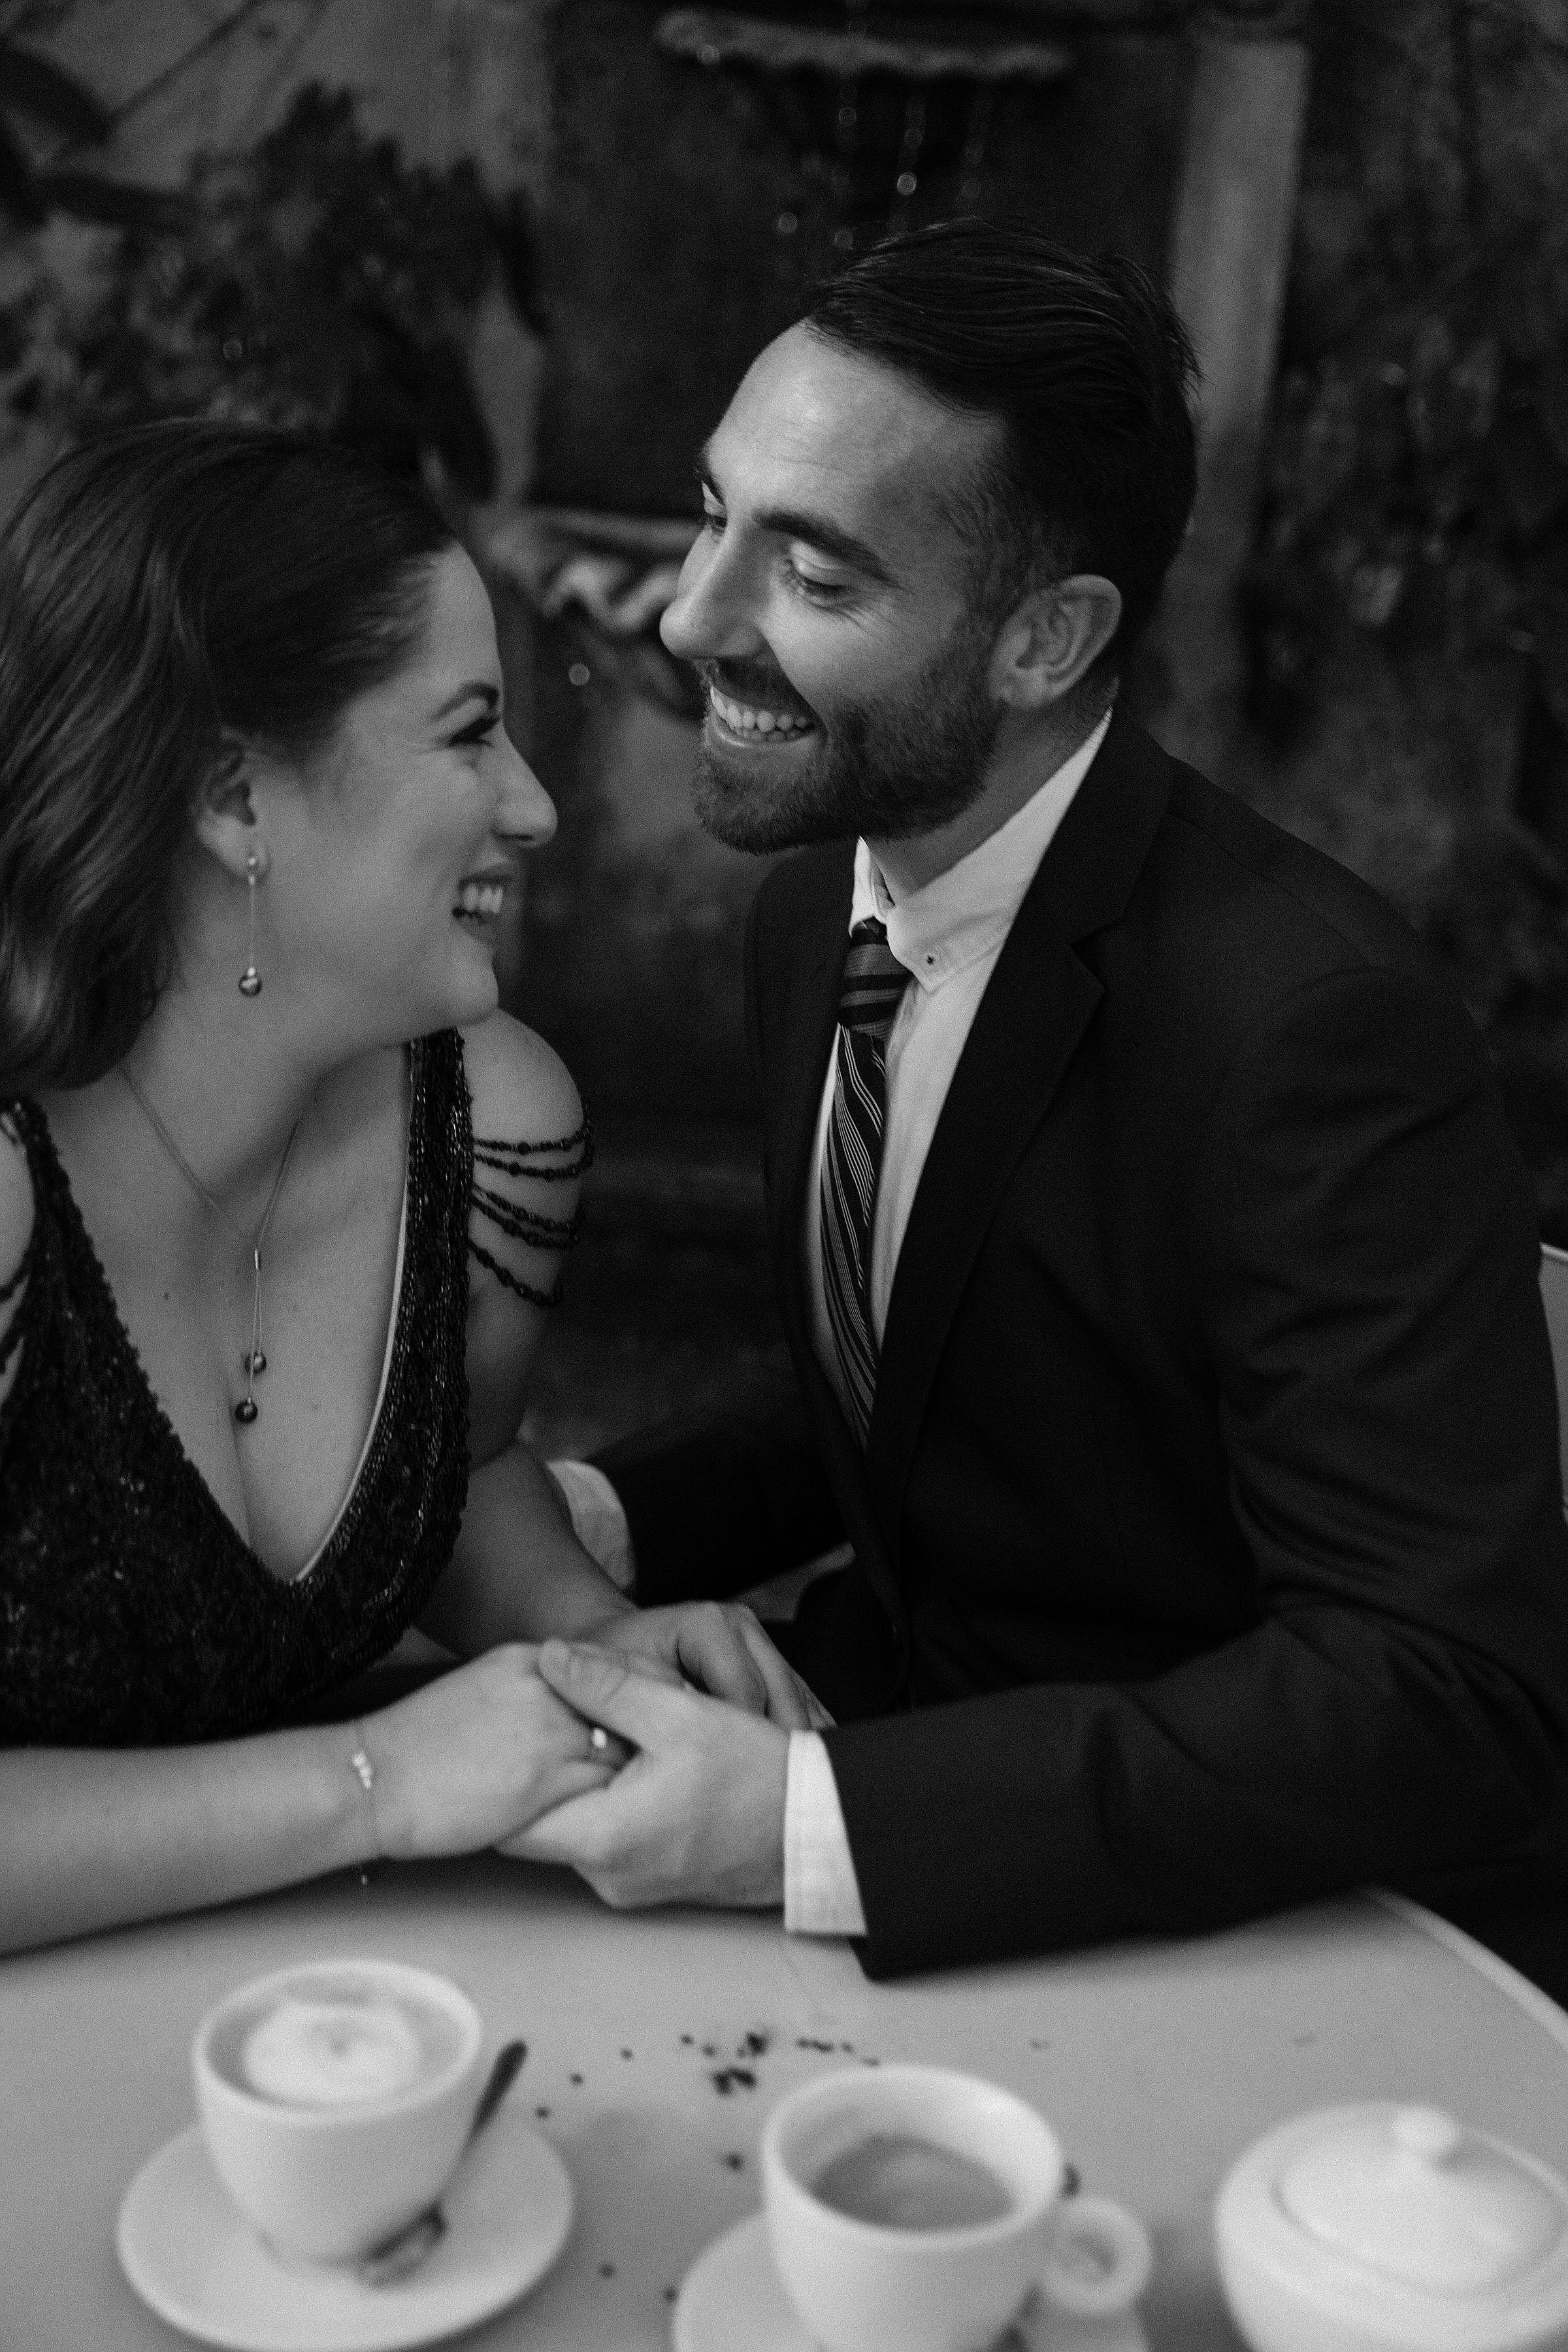 The Wedding Website of Jessica Nicole Fernández Sención and Sullivan Dessons